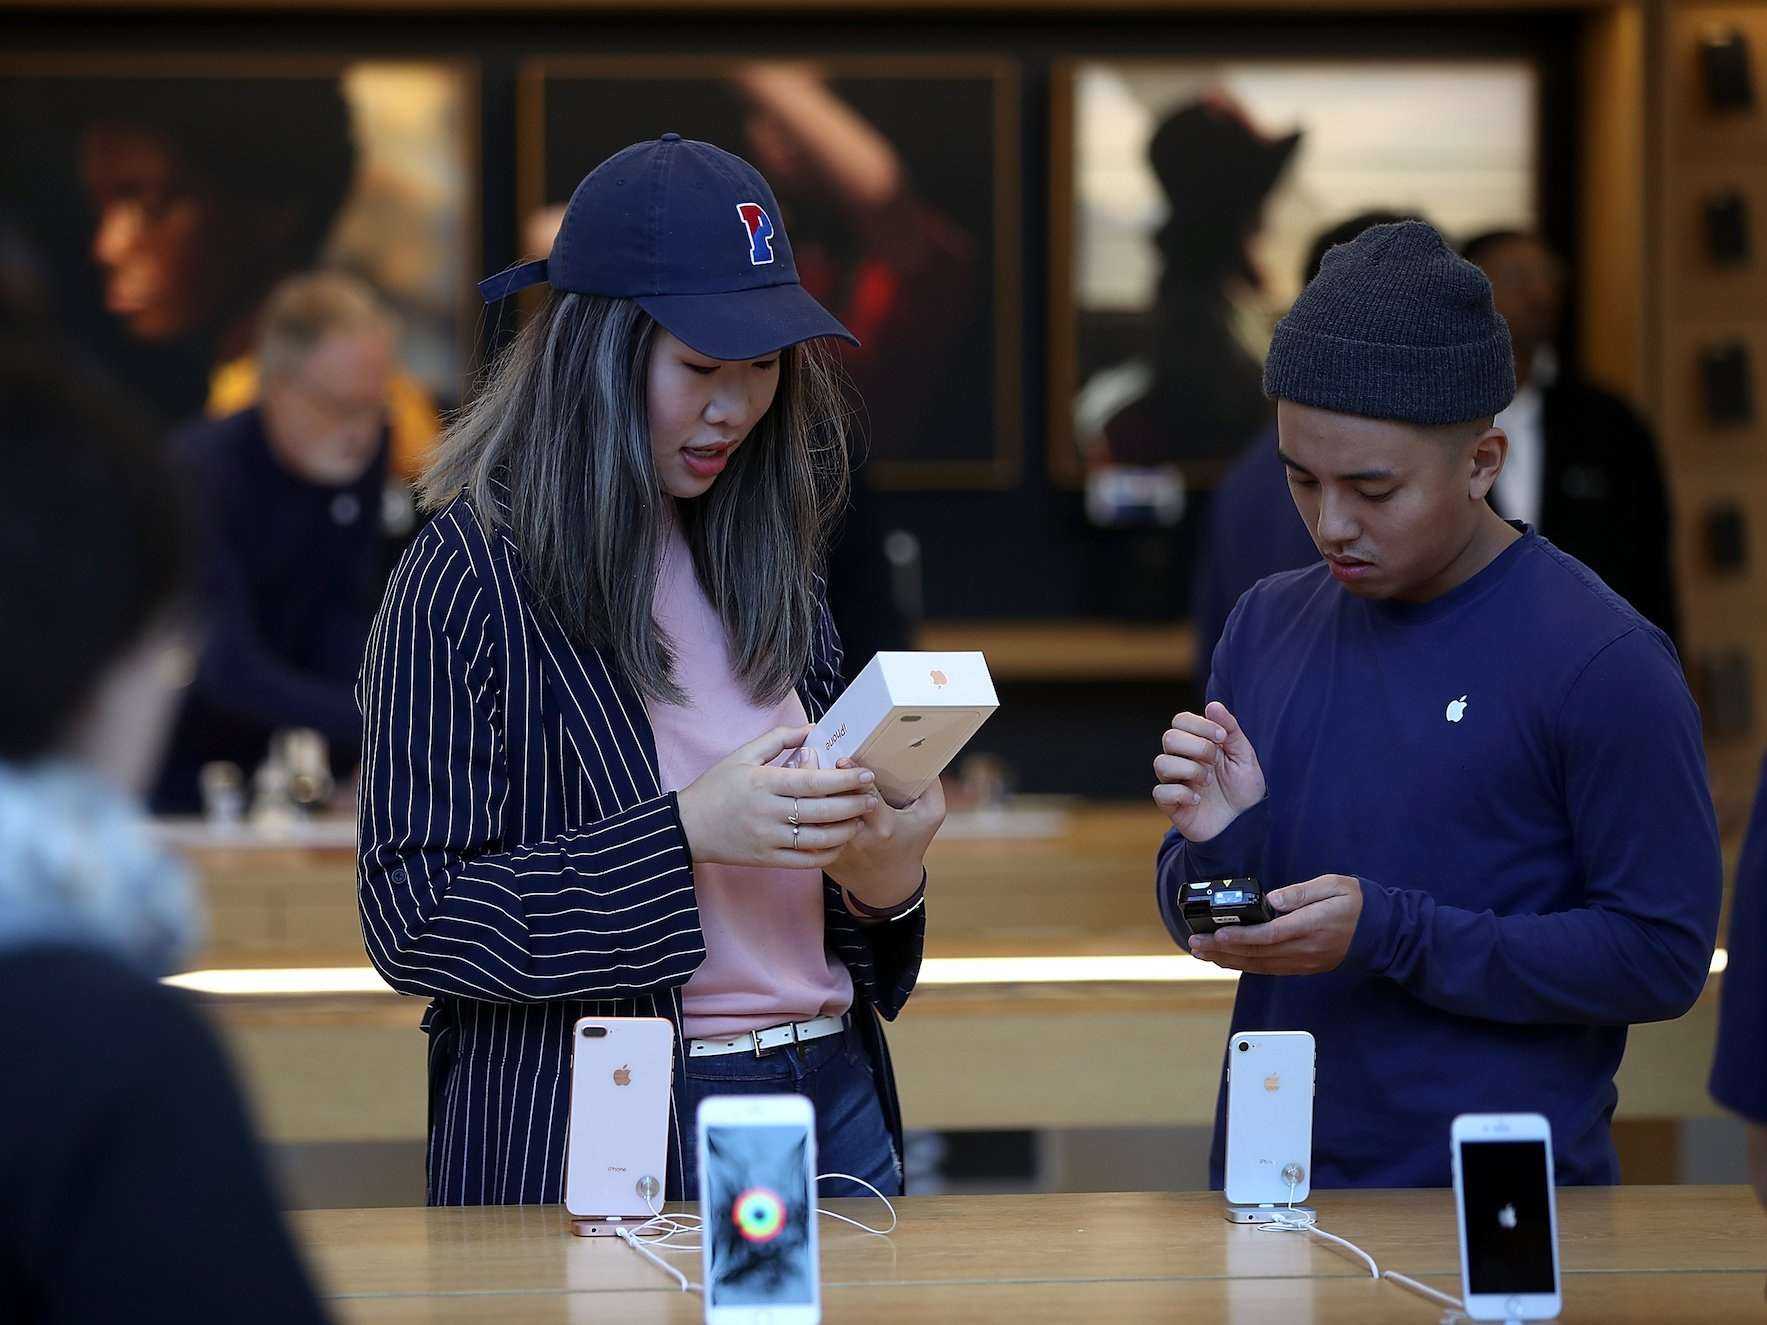 Sửa iPhone tại Apple Store - Đời không như là mơ